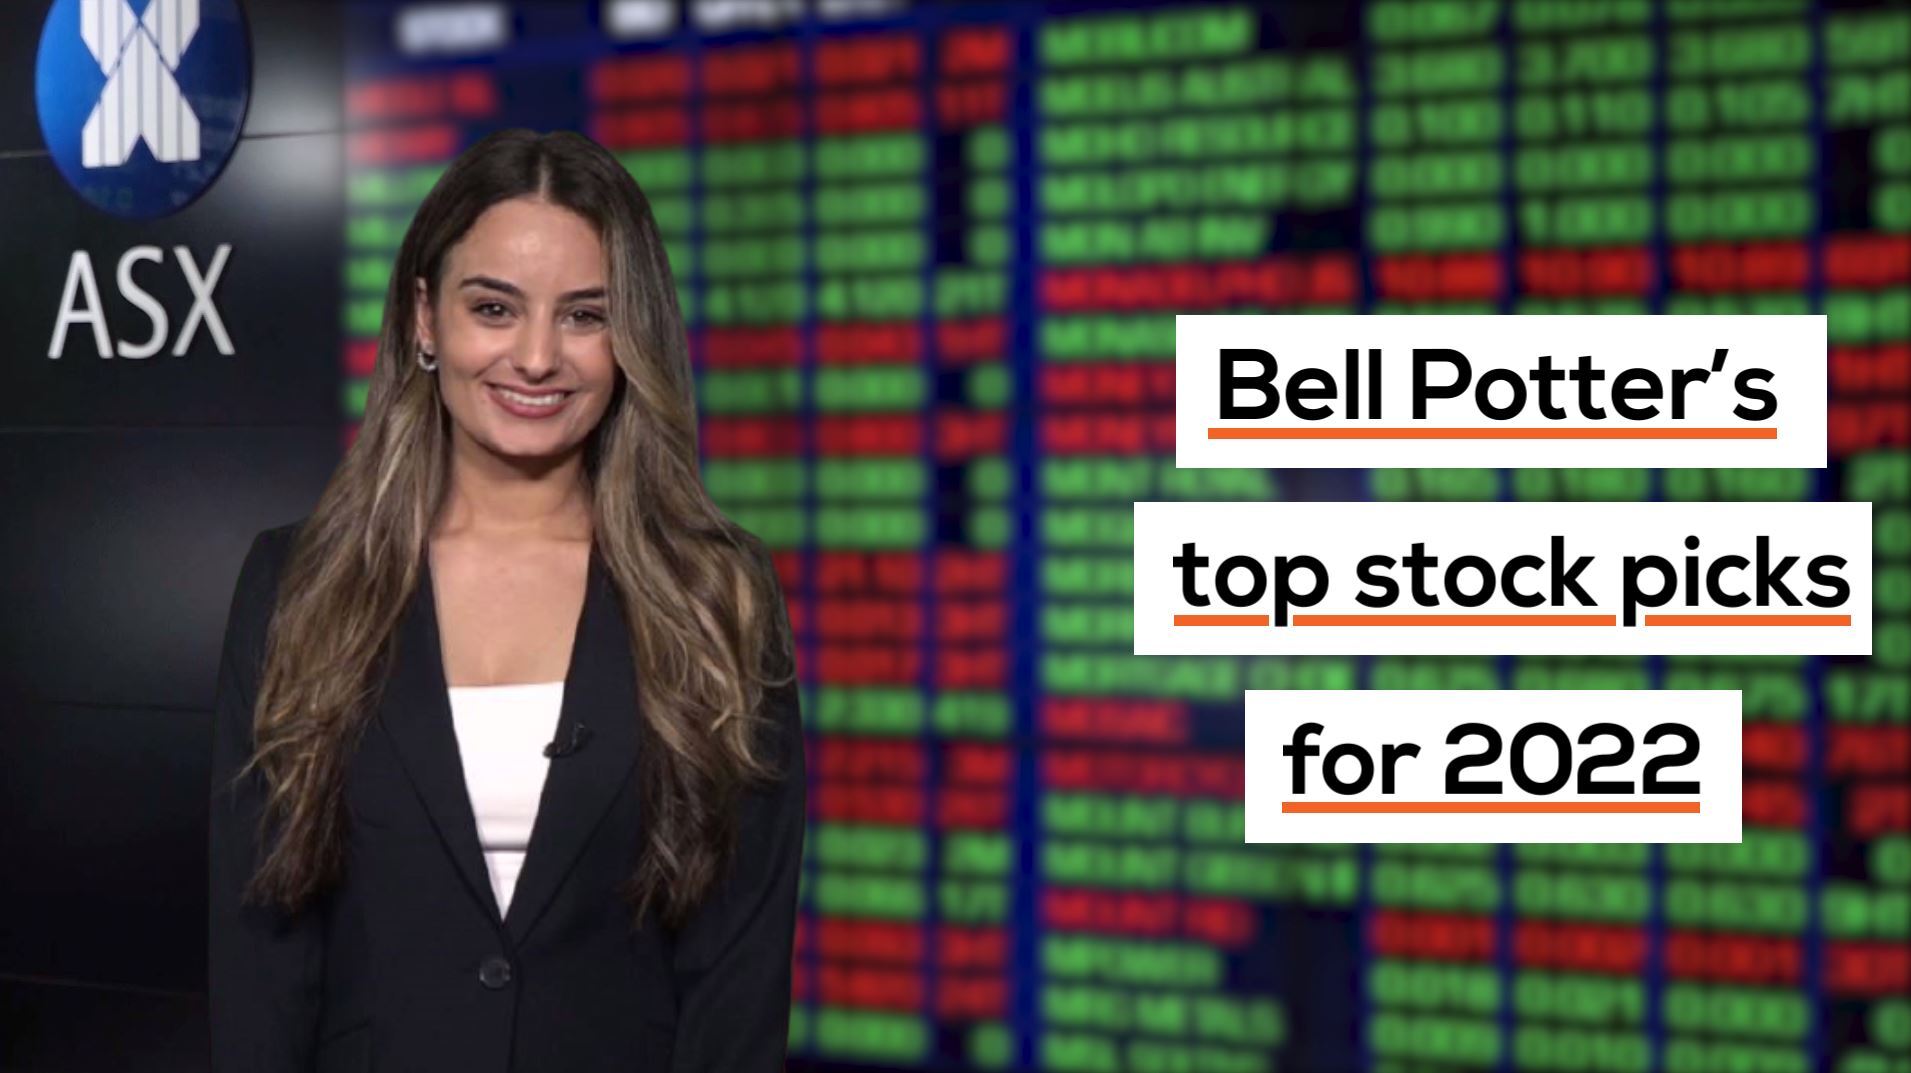 Bell Potter's top stock picks for 2022